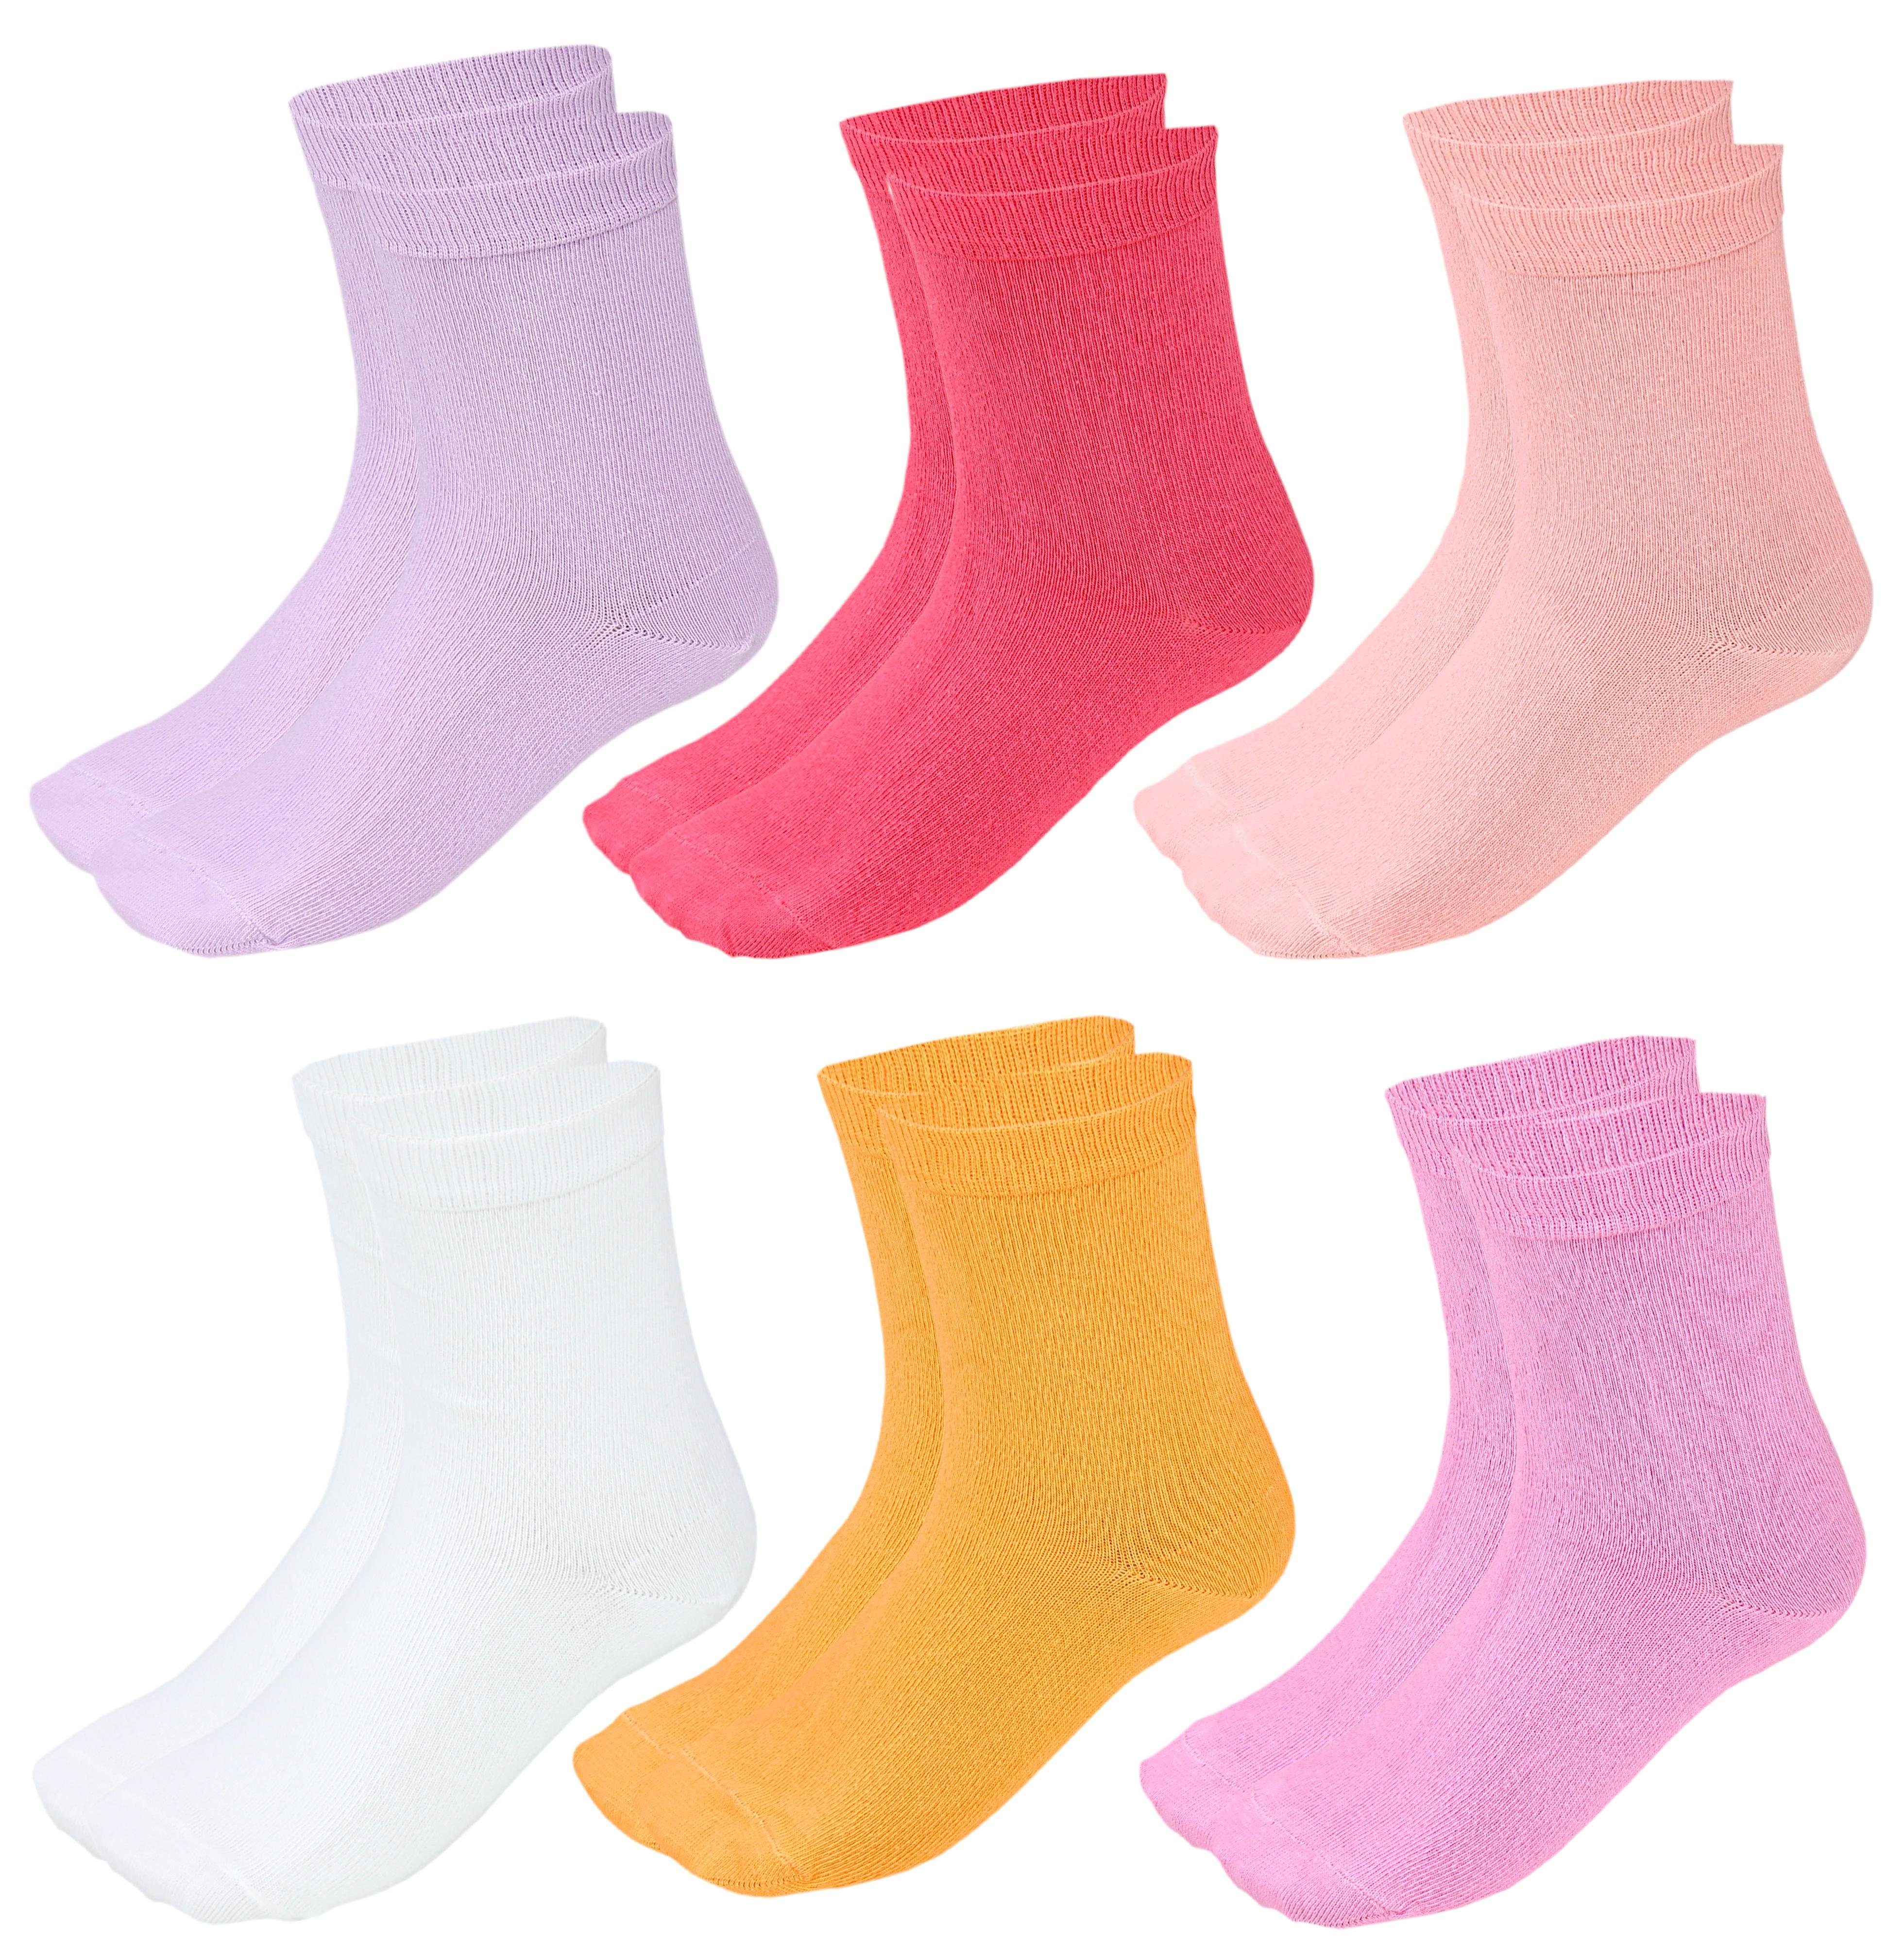 TupTam Freizeitsocken TupTam Kinder Socken Bunt Gemustert 6er Pack für Mädchen und Jungen Pink Aprikose Gelb Lila Weiß Koralle | Socken